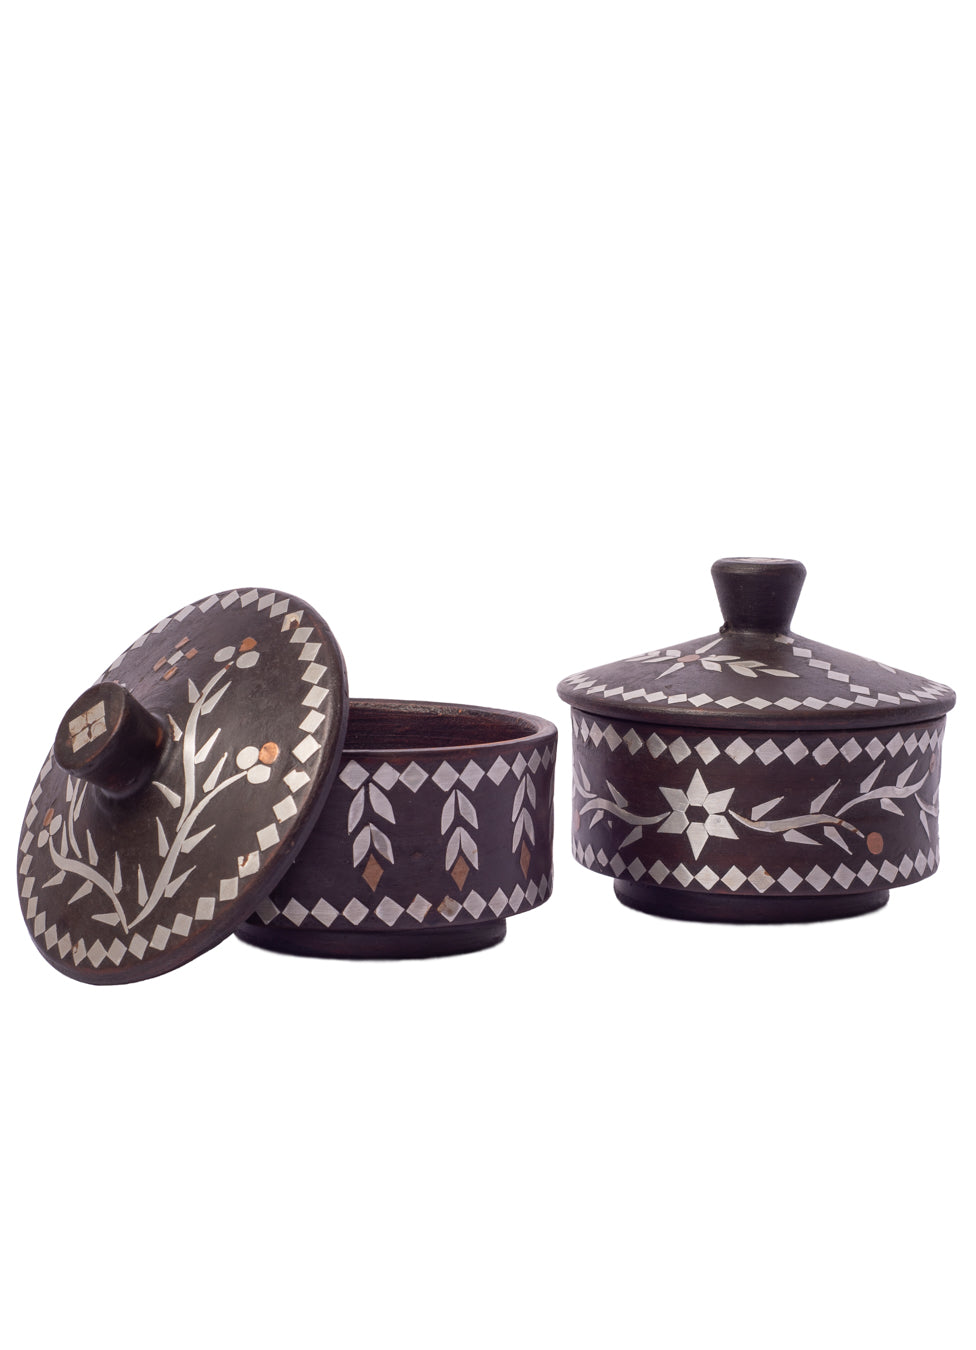 Vintage Inlay Moroccan Ceramic Trinket Box